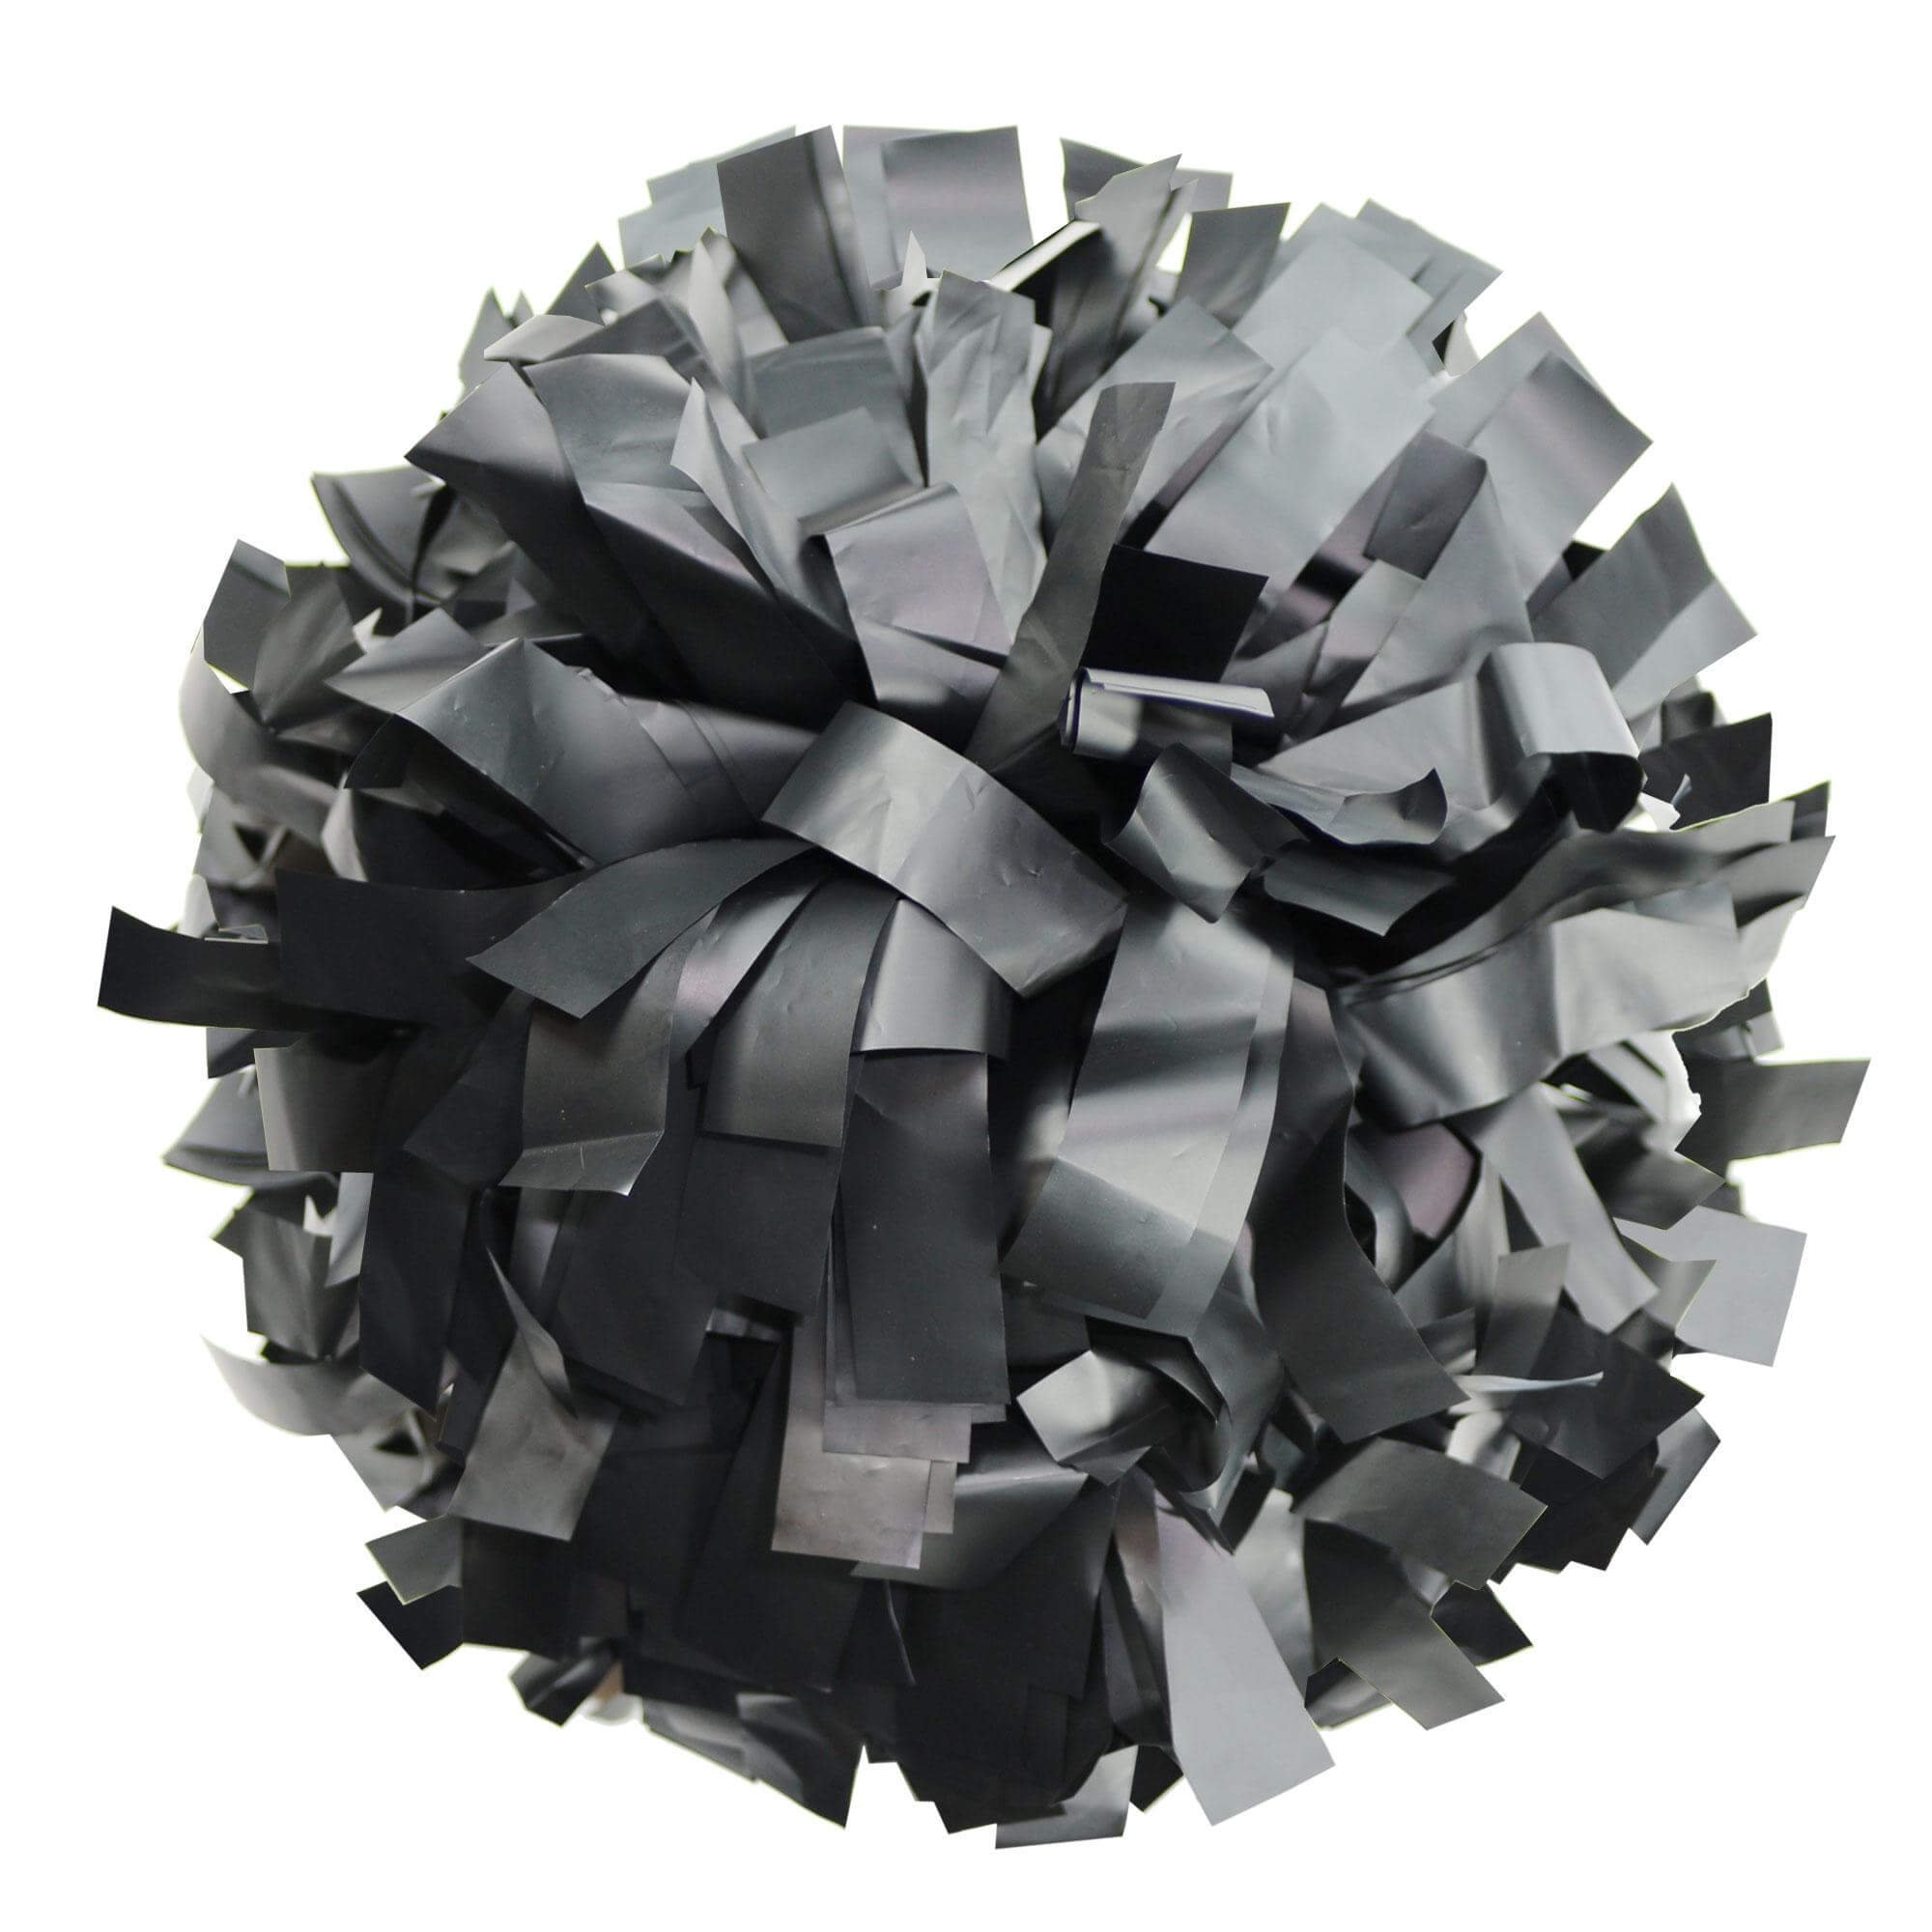 Danzcue Black Plastic Poms - Click Image to Close